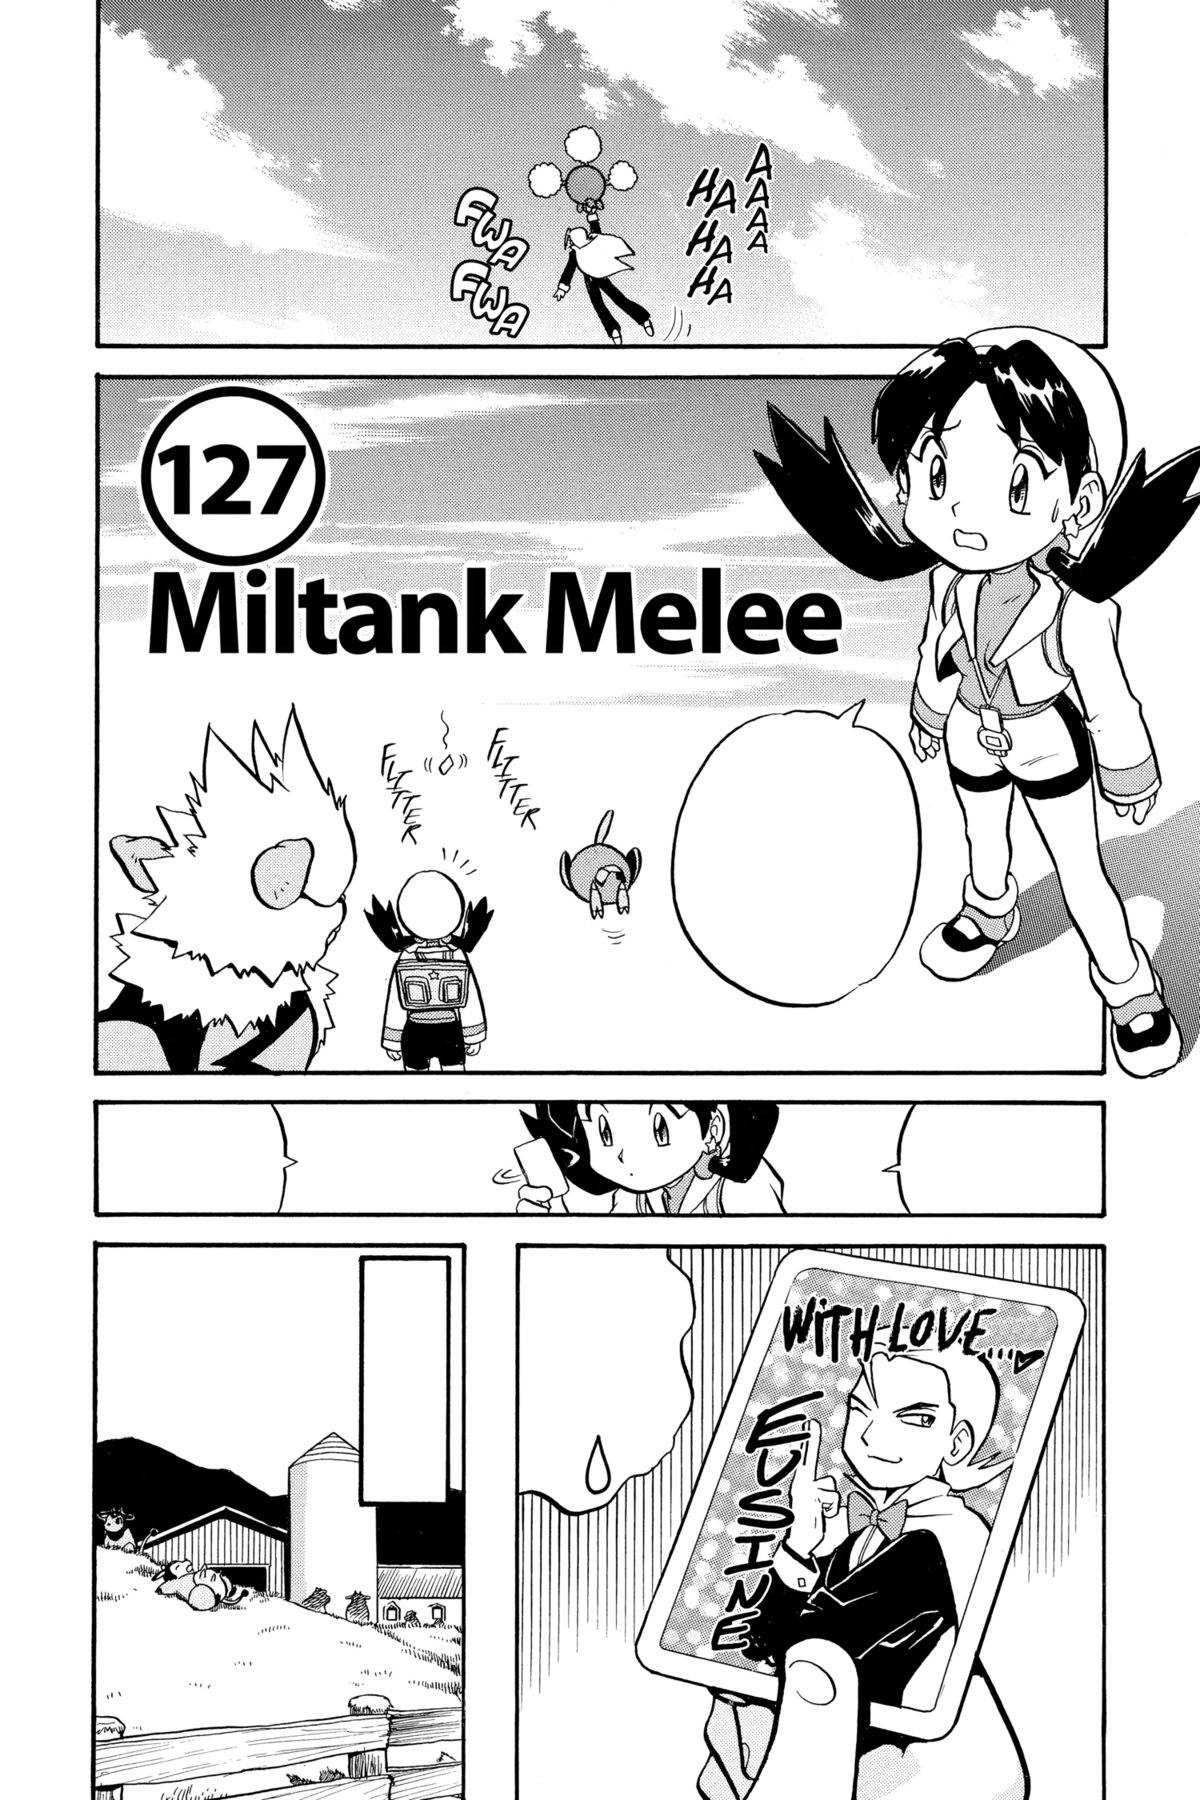 Miltank (Pokémon) - Bulbapedia, the community-driven Pokémon